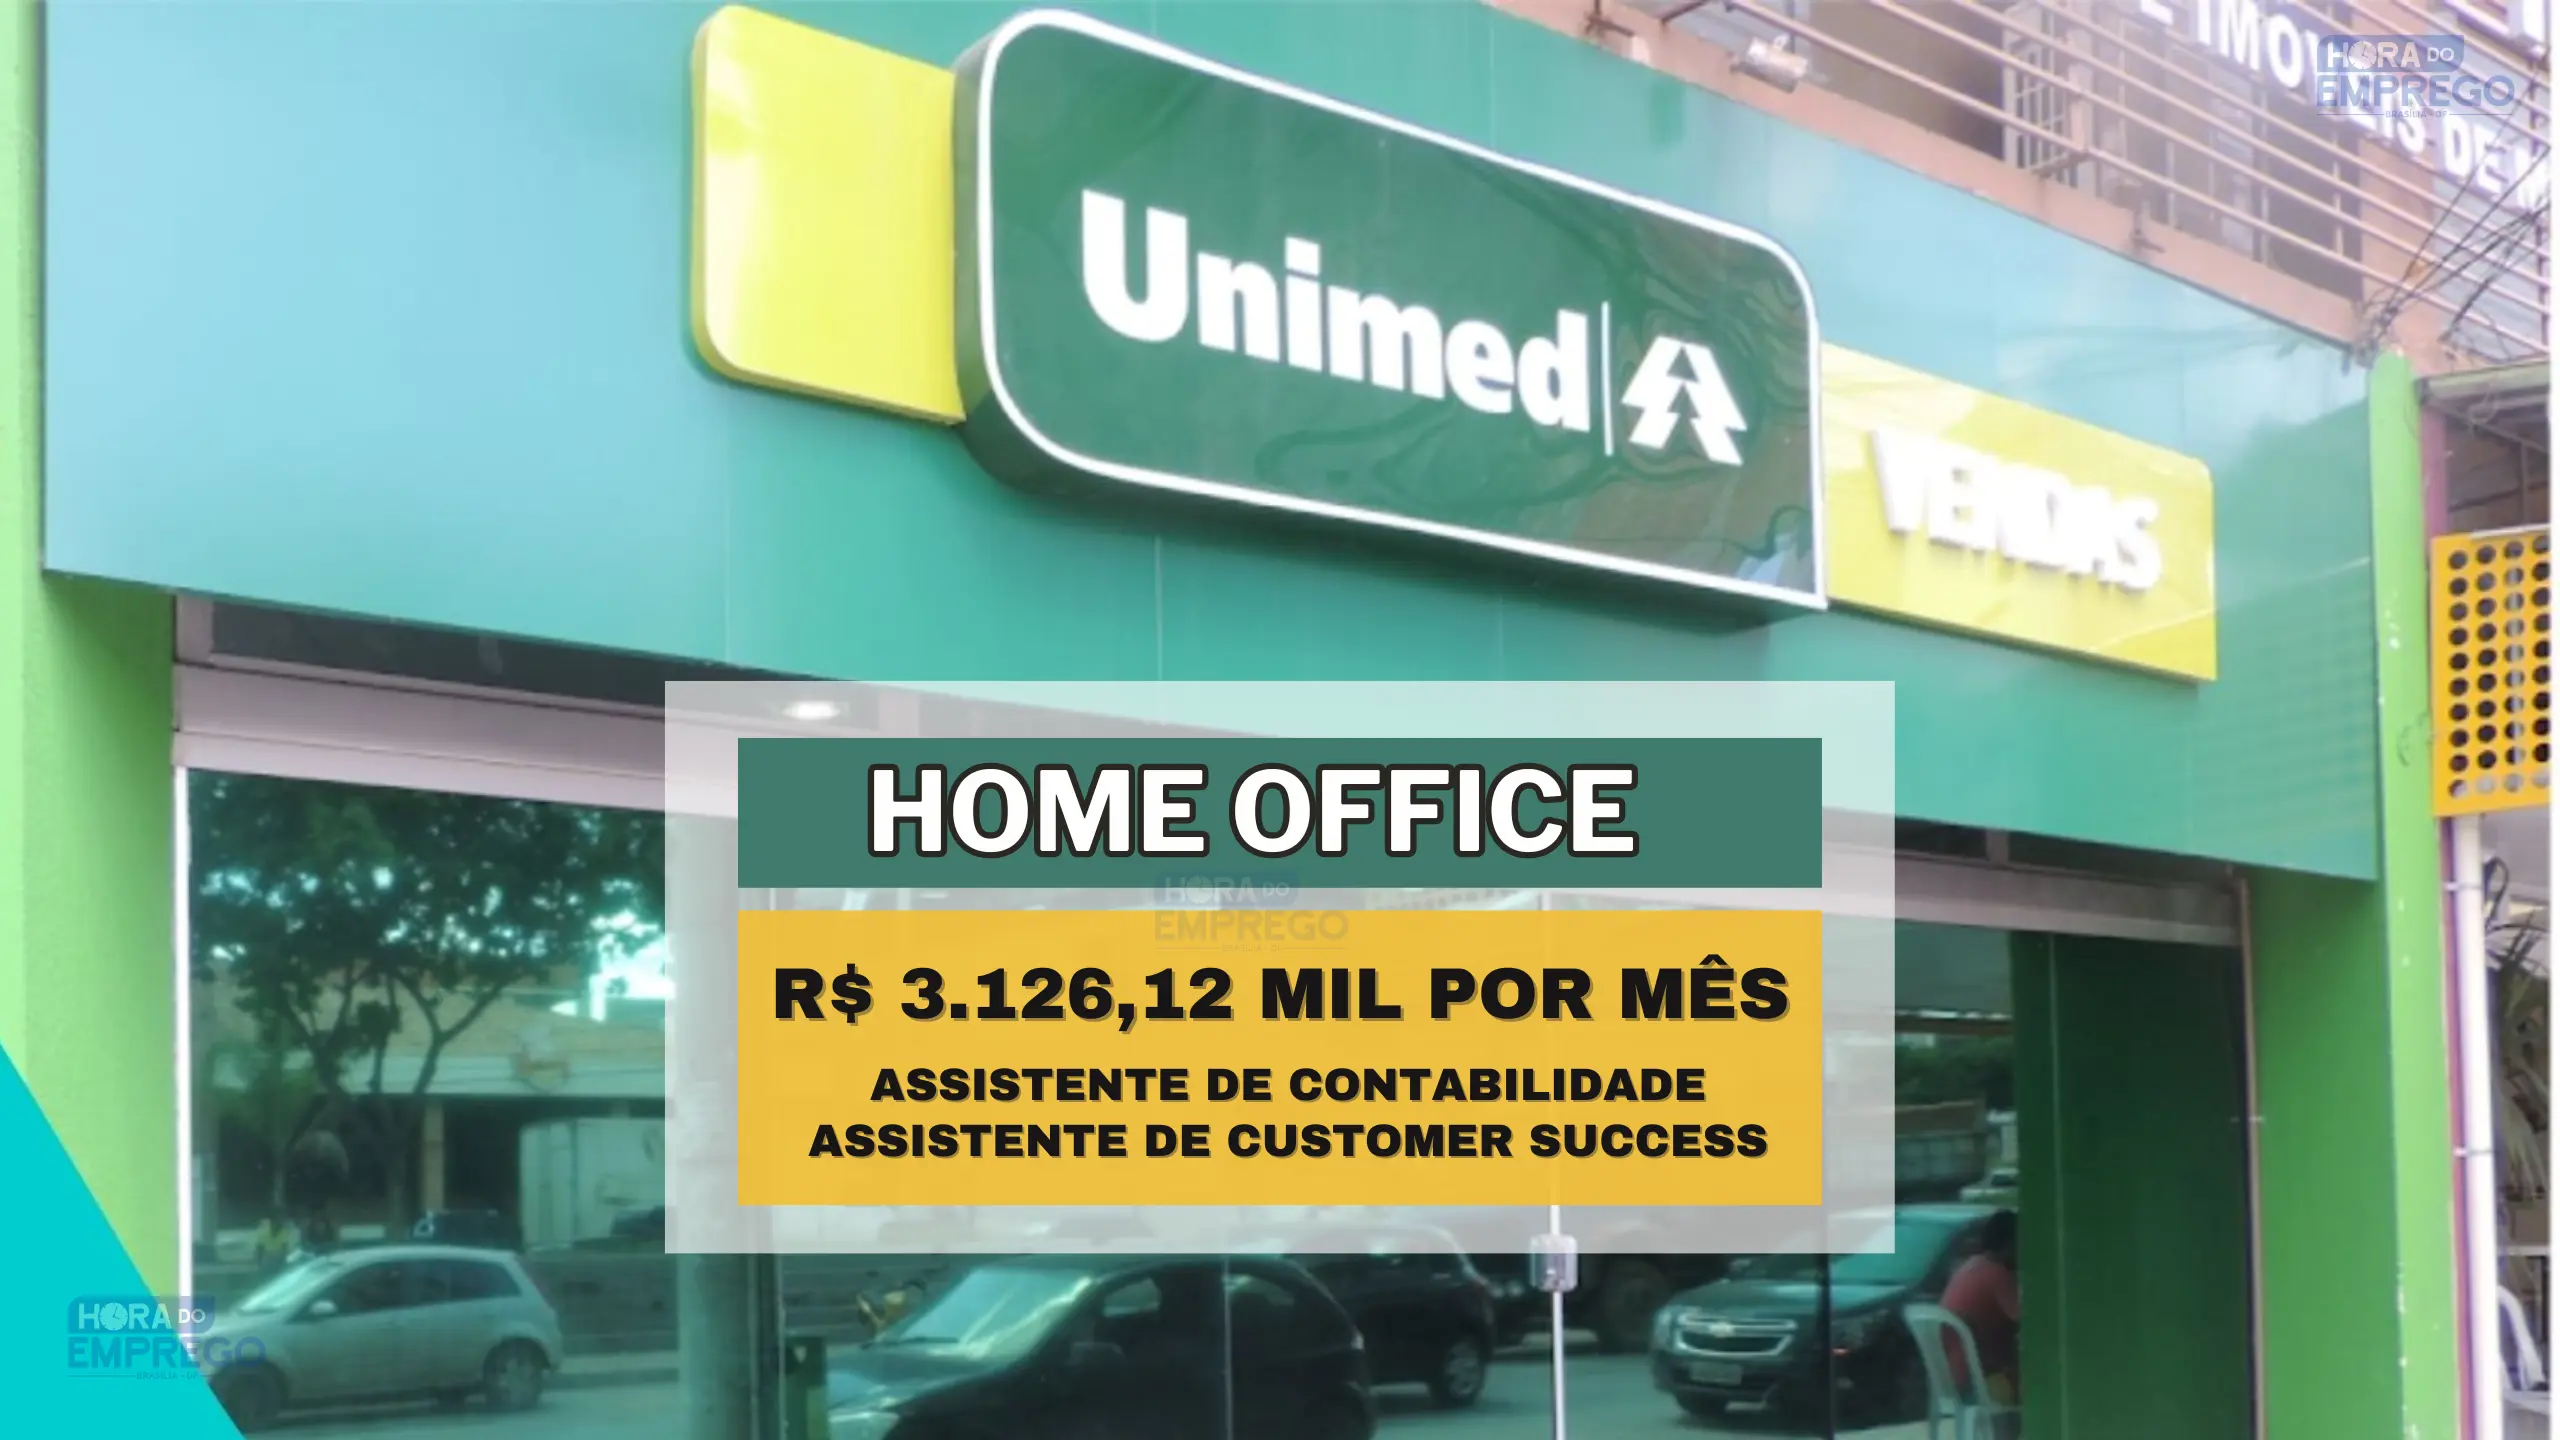 Unimed abre vagas HOME OFFICE com salário de R$ 3.126,12 MIL por mês para Assistente de Contabilidade e Assistente de Customer Success